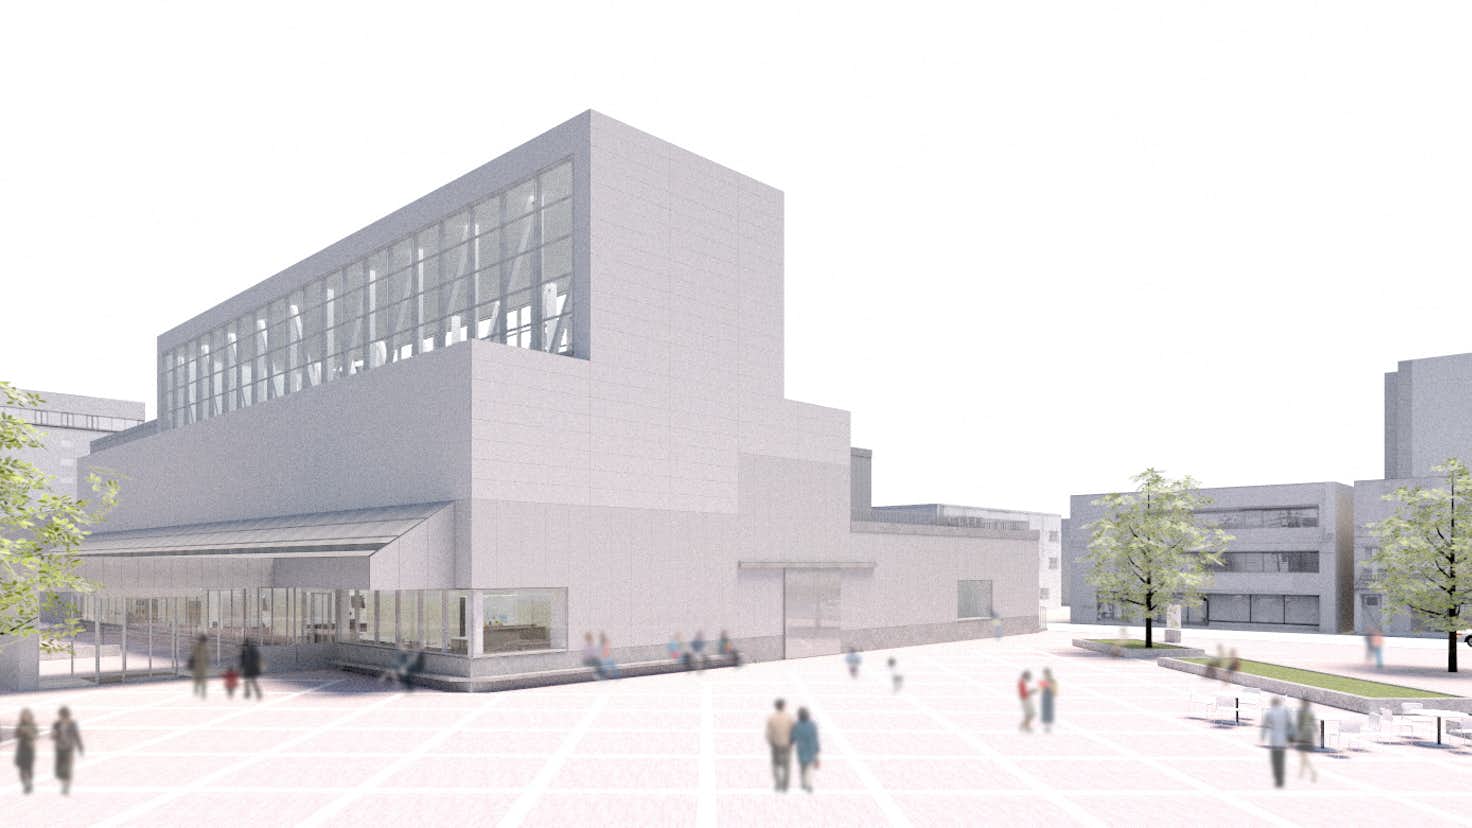 全面建て替えの八戸市美術館 11月に開館へ 新館長には建築家 佐藤慎也が就任 美術手帖